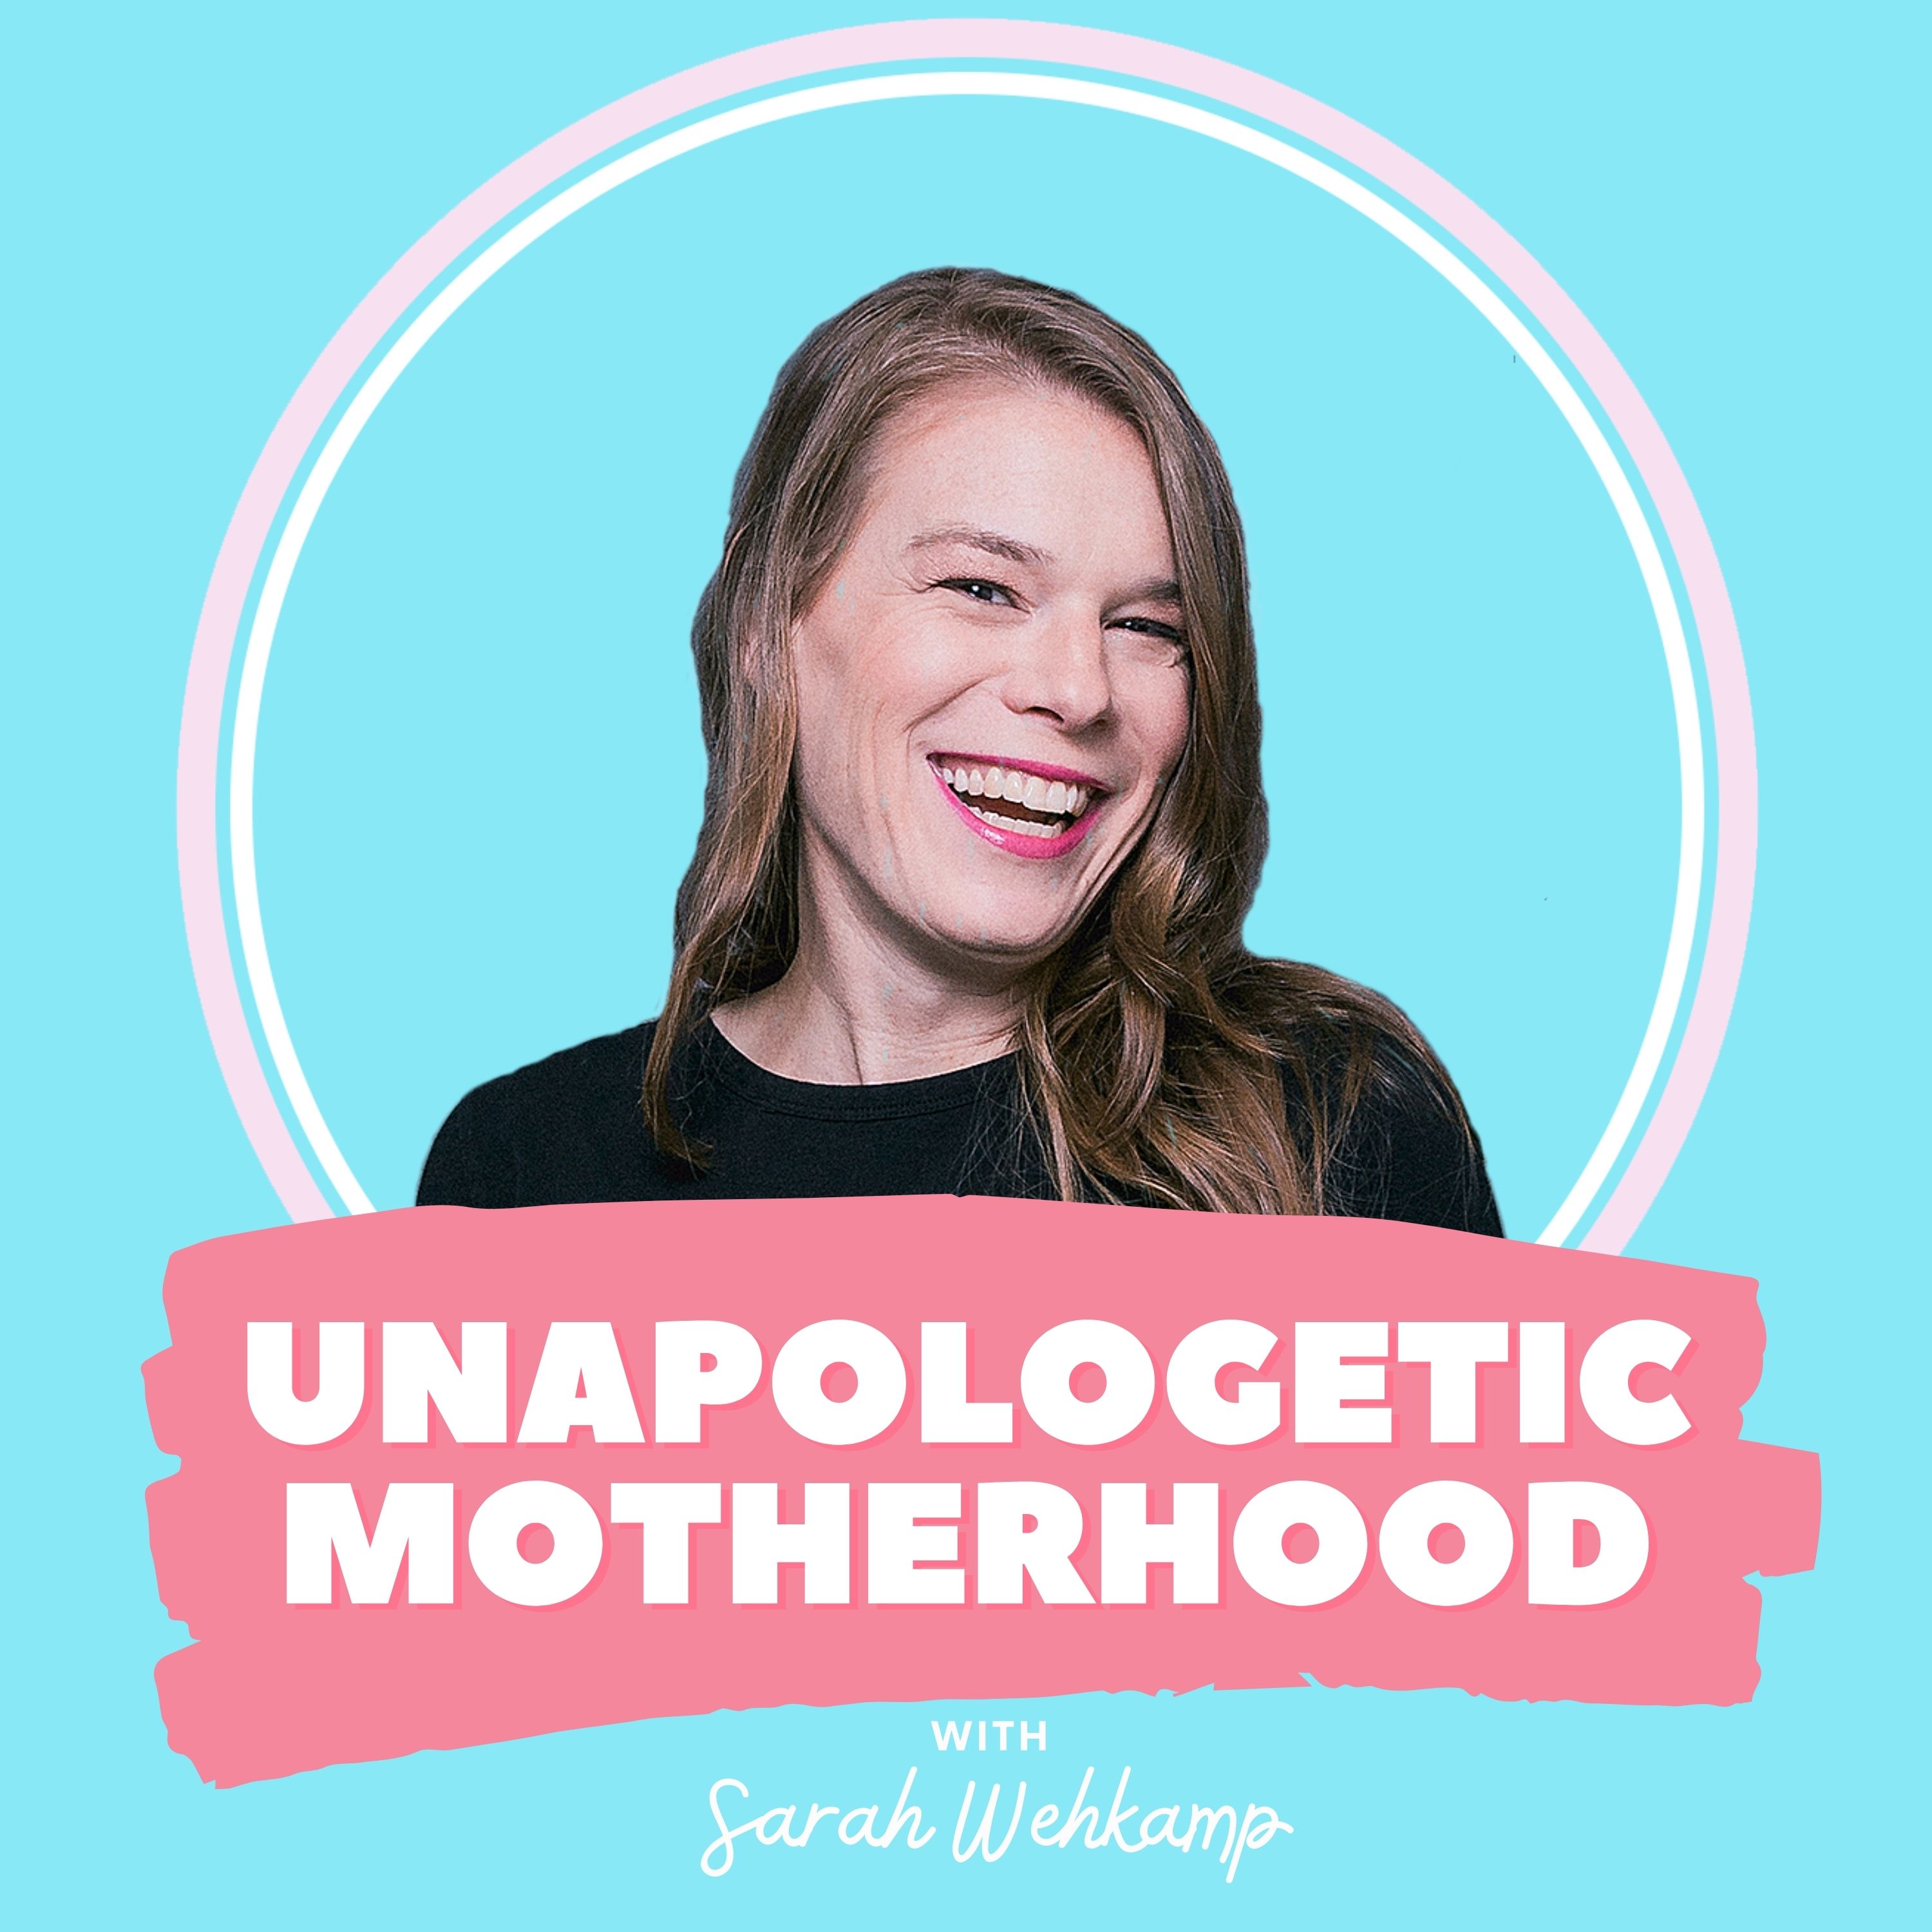 Unapologetic Motherhood